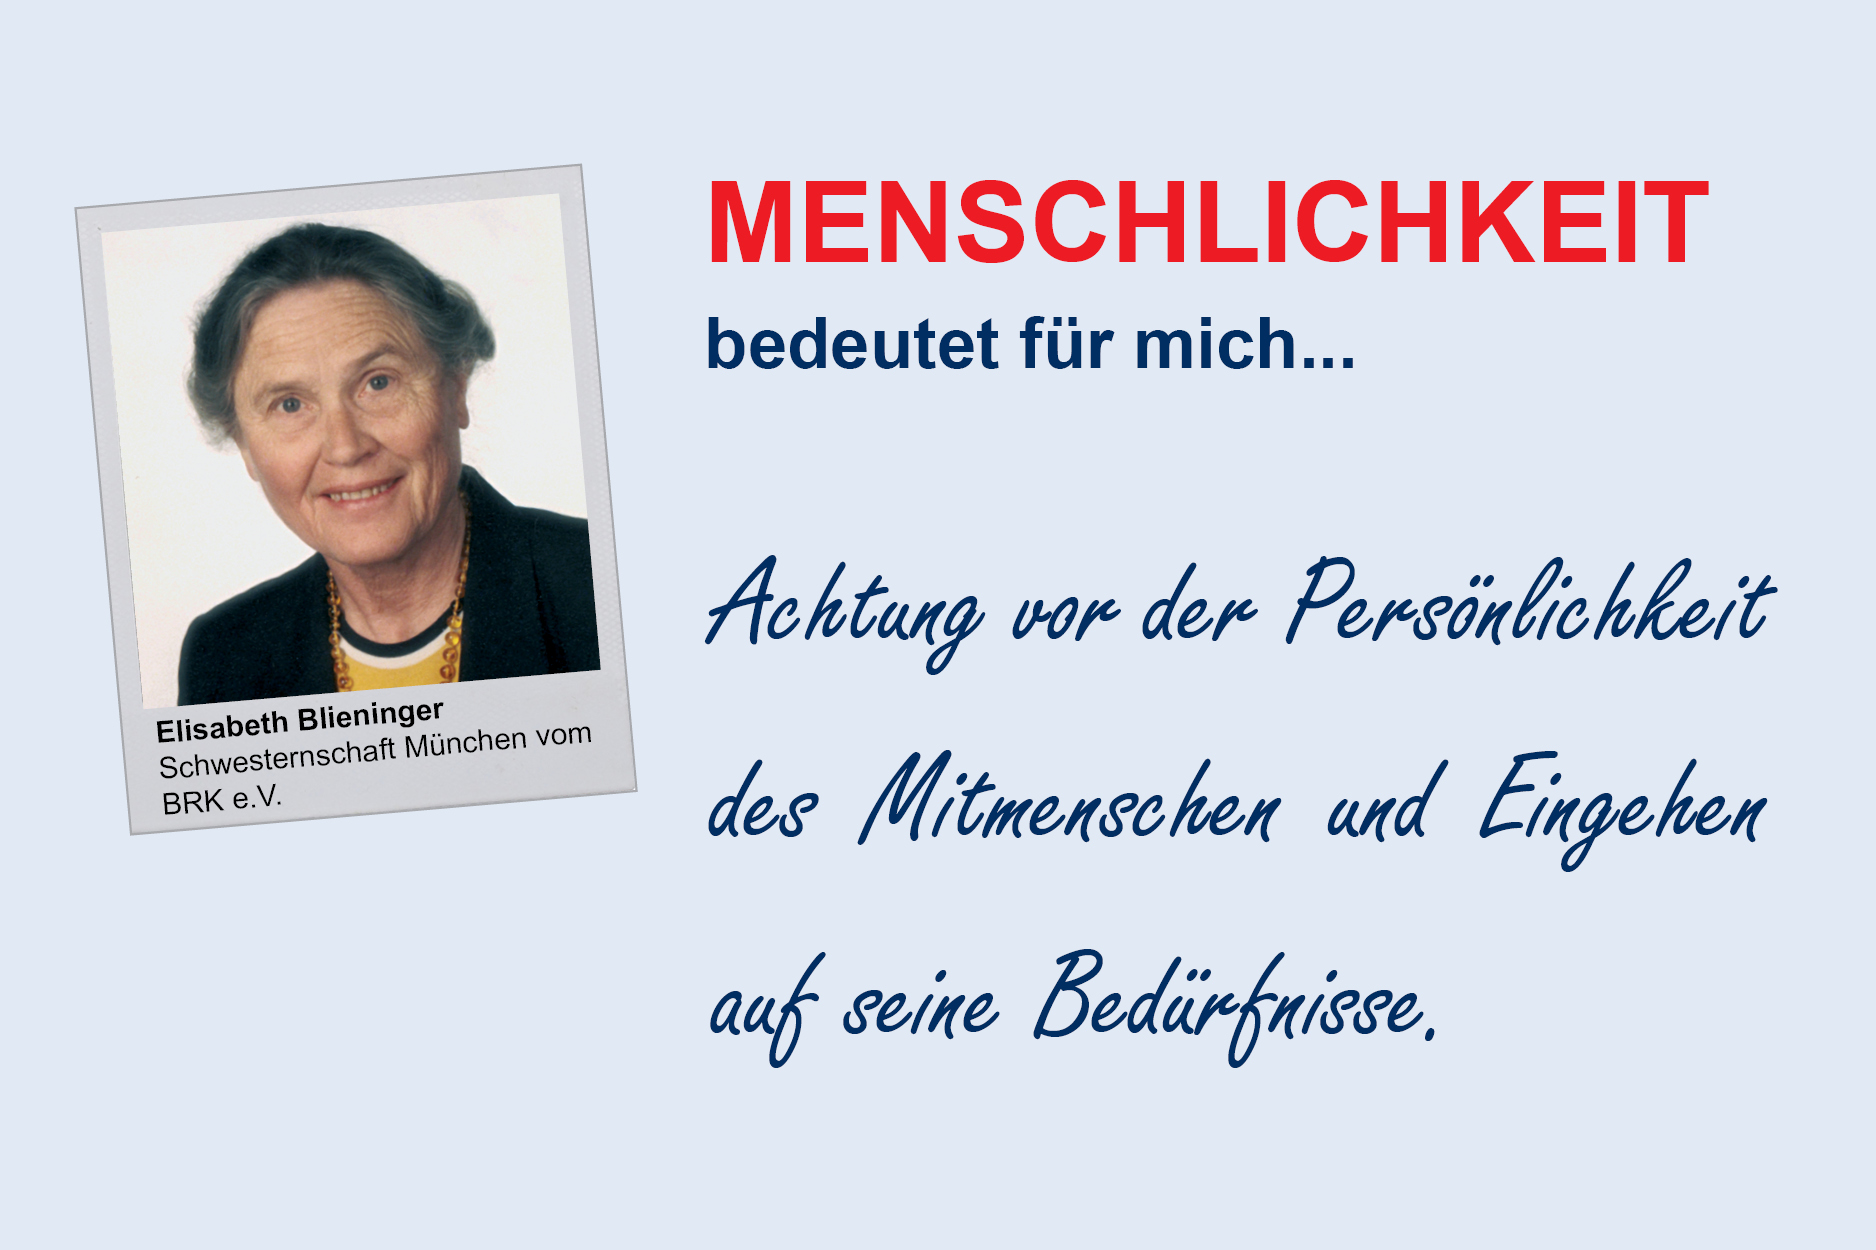 Elisabeth Blieninger, Schwesternschaft München vom BRK e.V.
**Menschlichkeit**